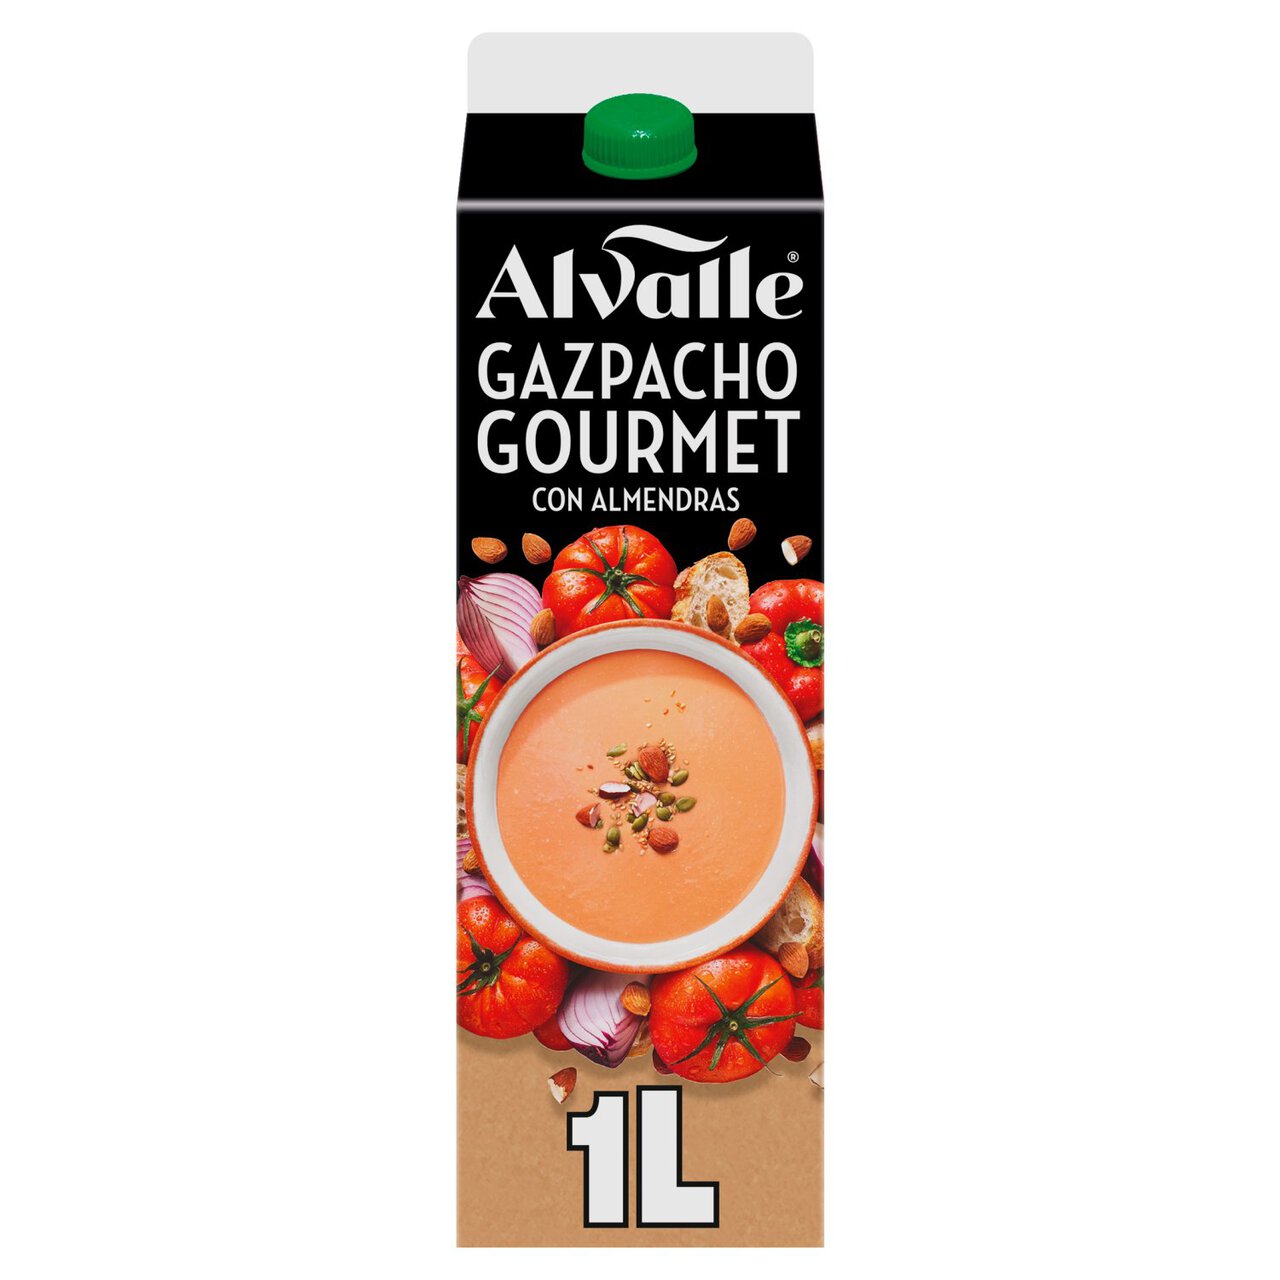 Alvalle Spanish Gazpacho Gourmet 1l